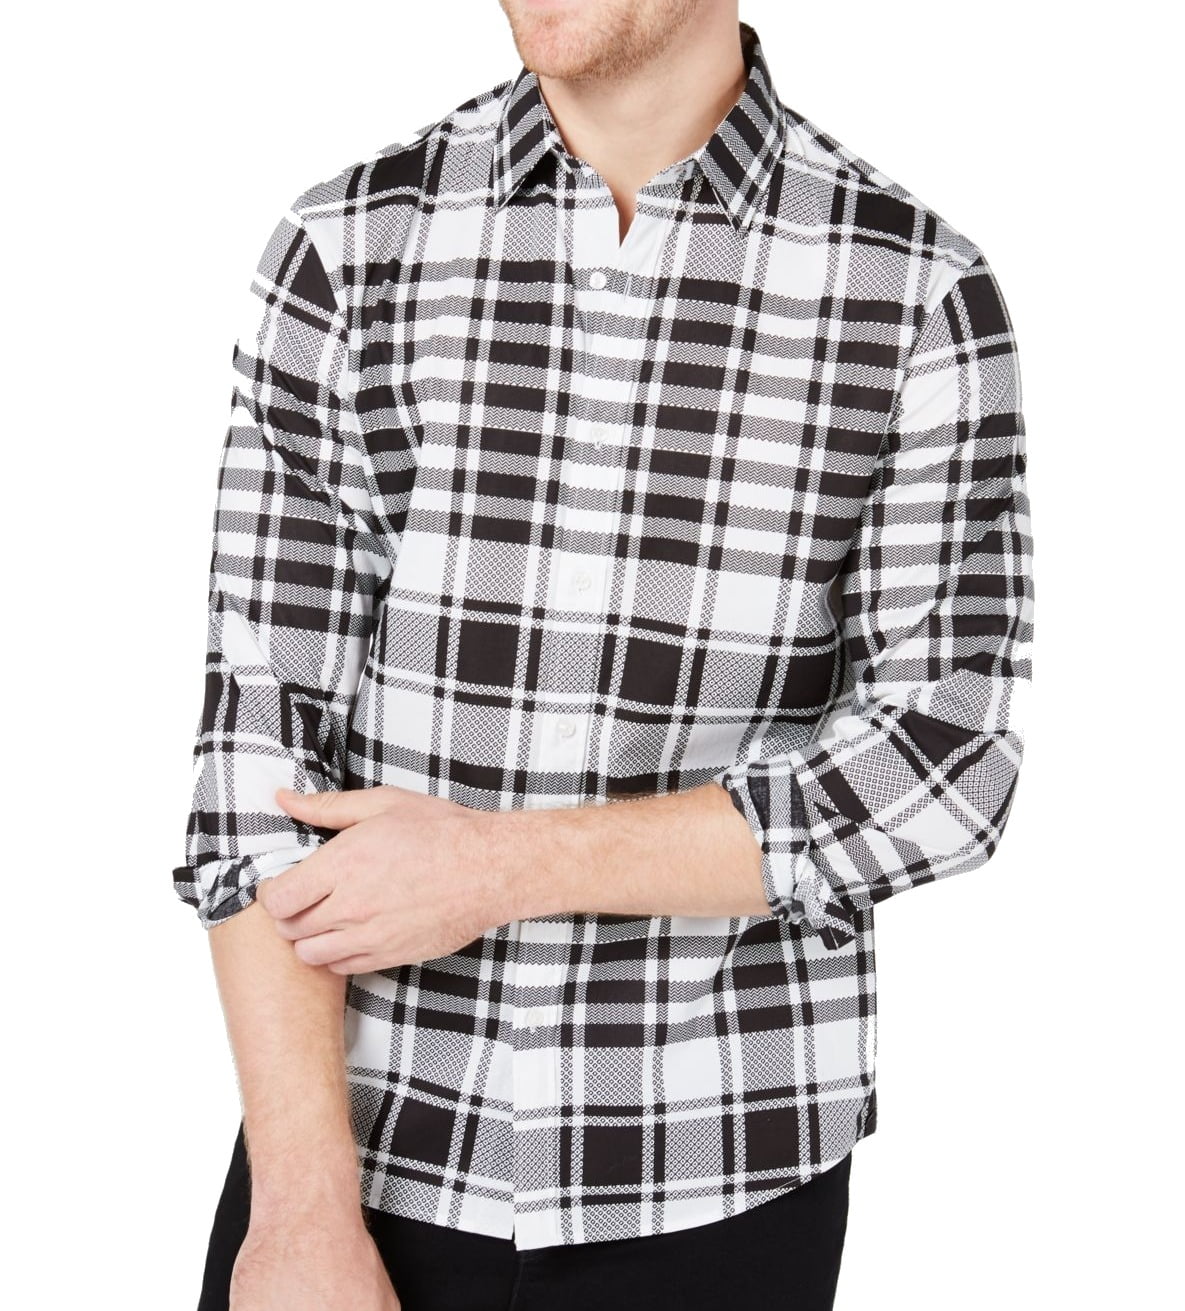 Michael Kors Casual Shirts - Mens Shirt White Button Down Plaid Slim ...